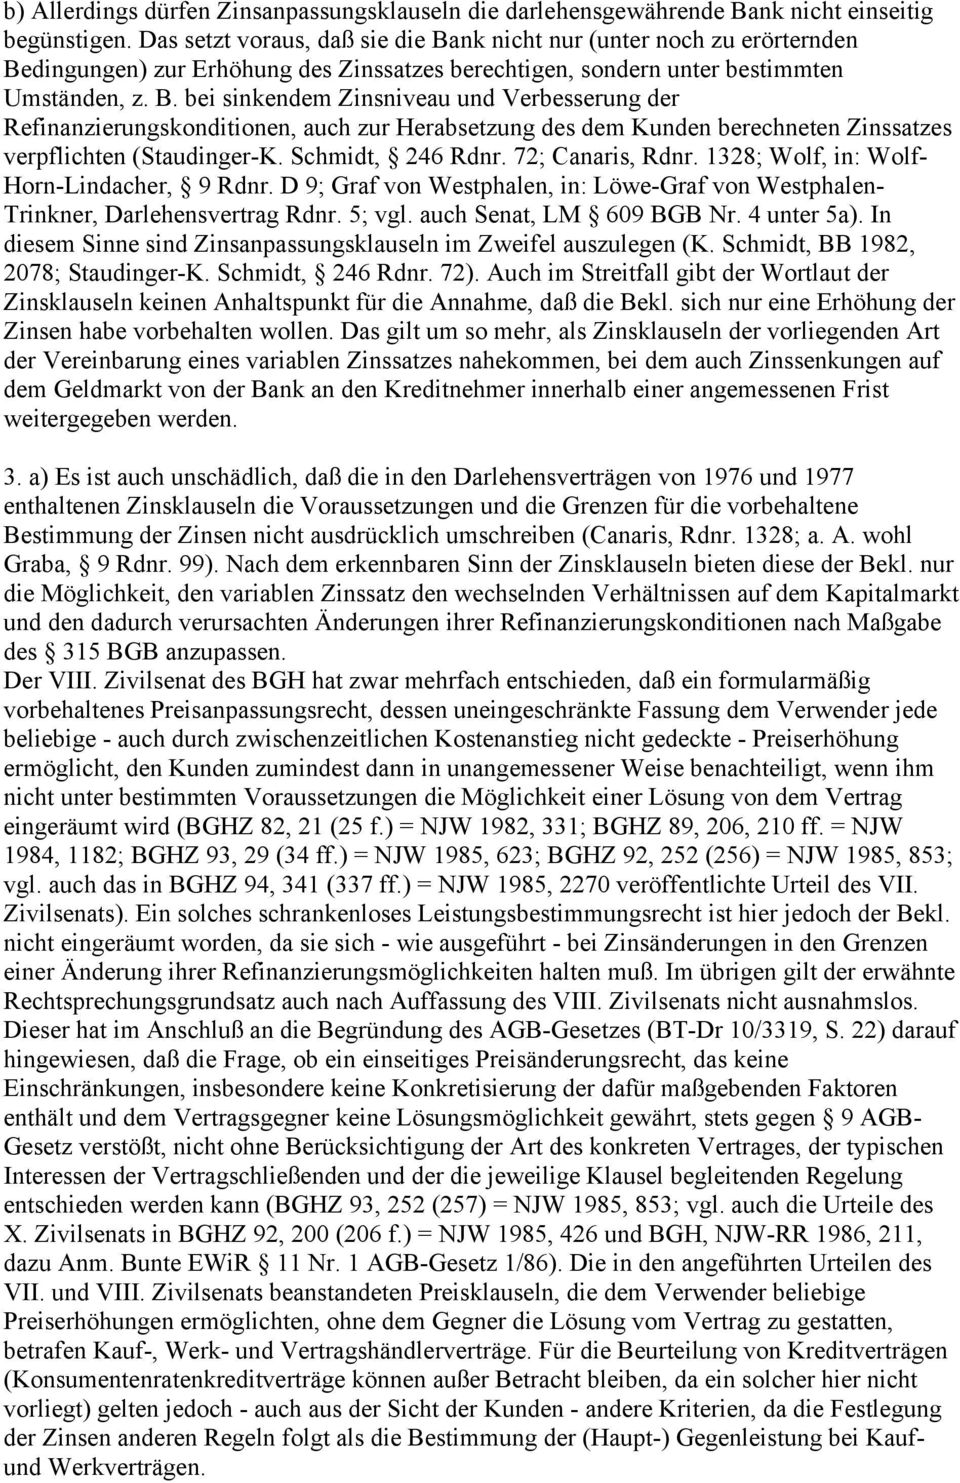 Schmidt, 246 Rdnr. 72; Canaris, Rdnr. 1328; Wolf, in: Wolf- Horn-Lindacher, 9 Rdnr. D 9; Graf von Westphalen, in: Löwe-Graf von Westphalen- Trinkner, Darlehensvertrag Rdnr. 5; vgl.